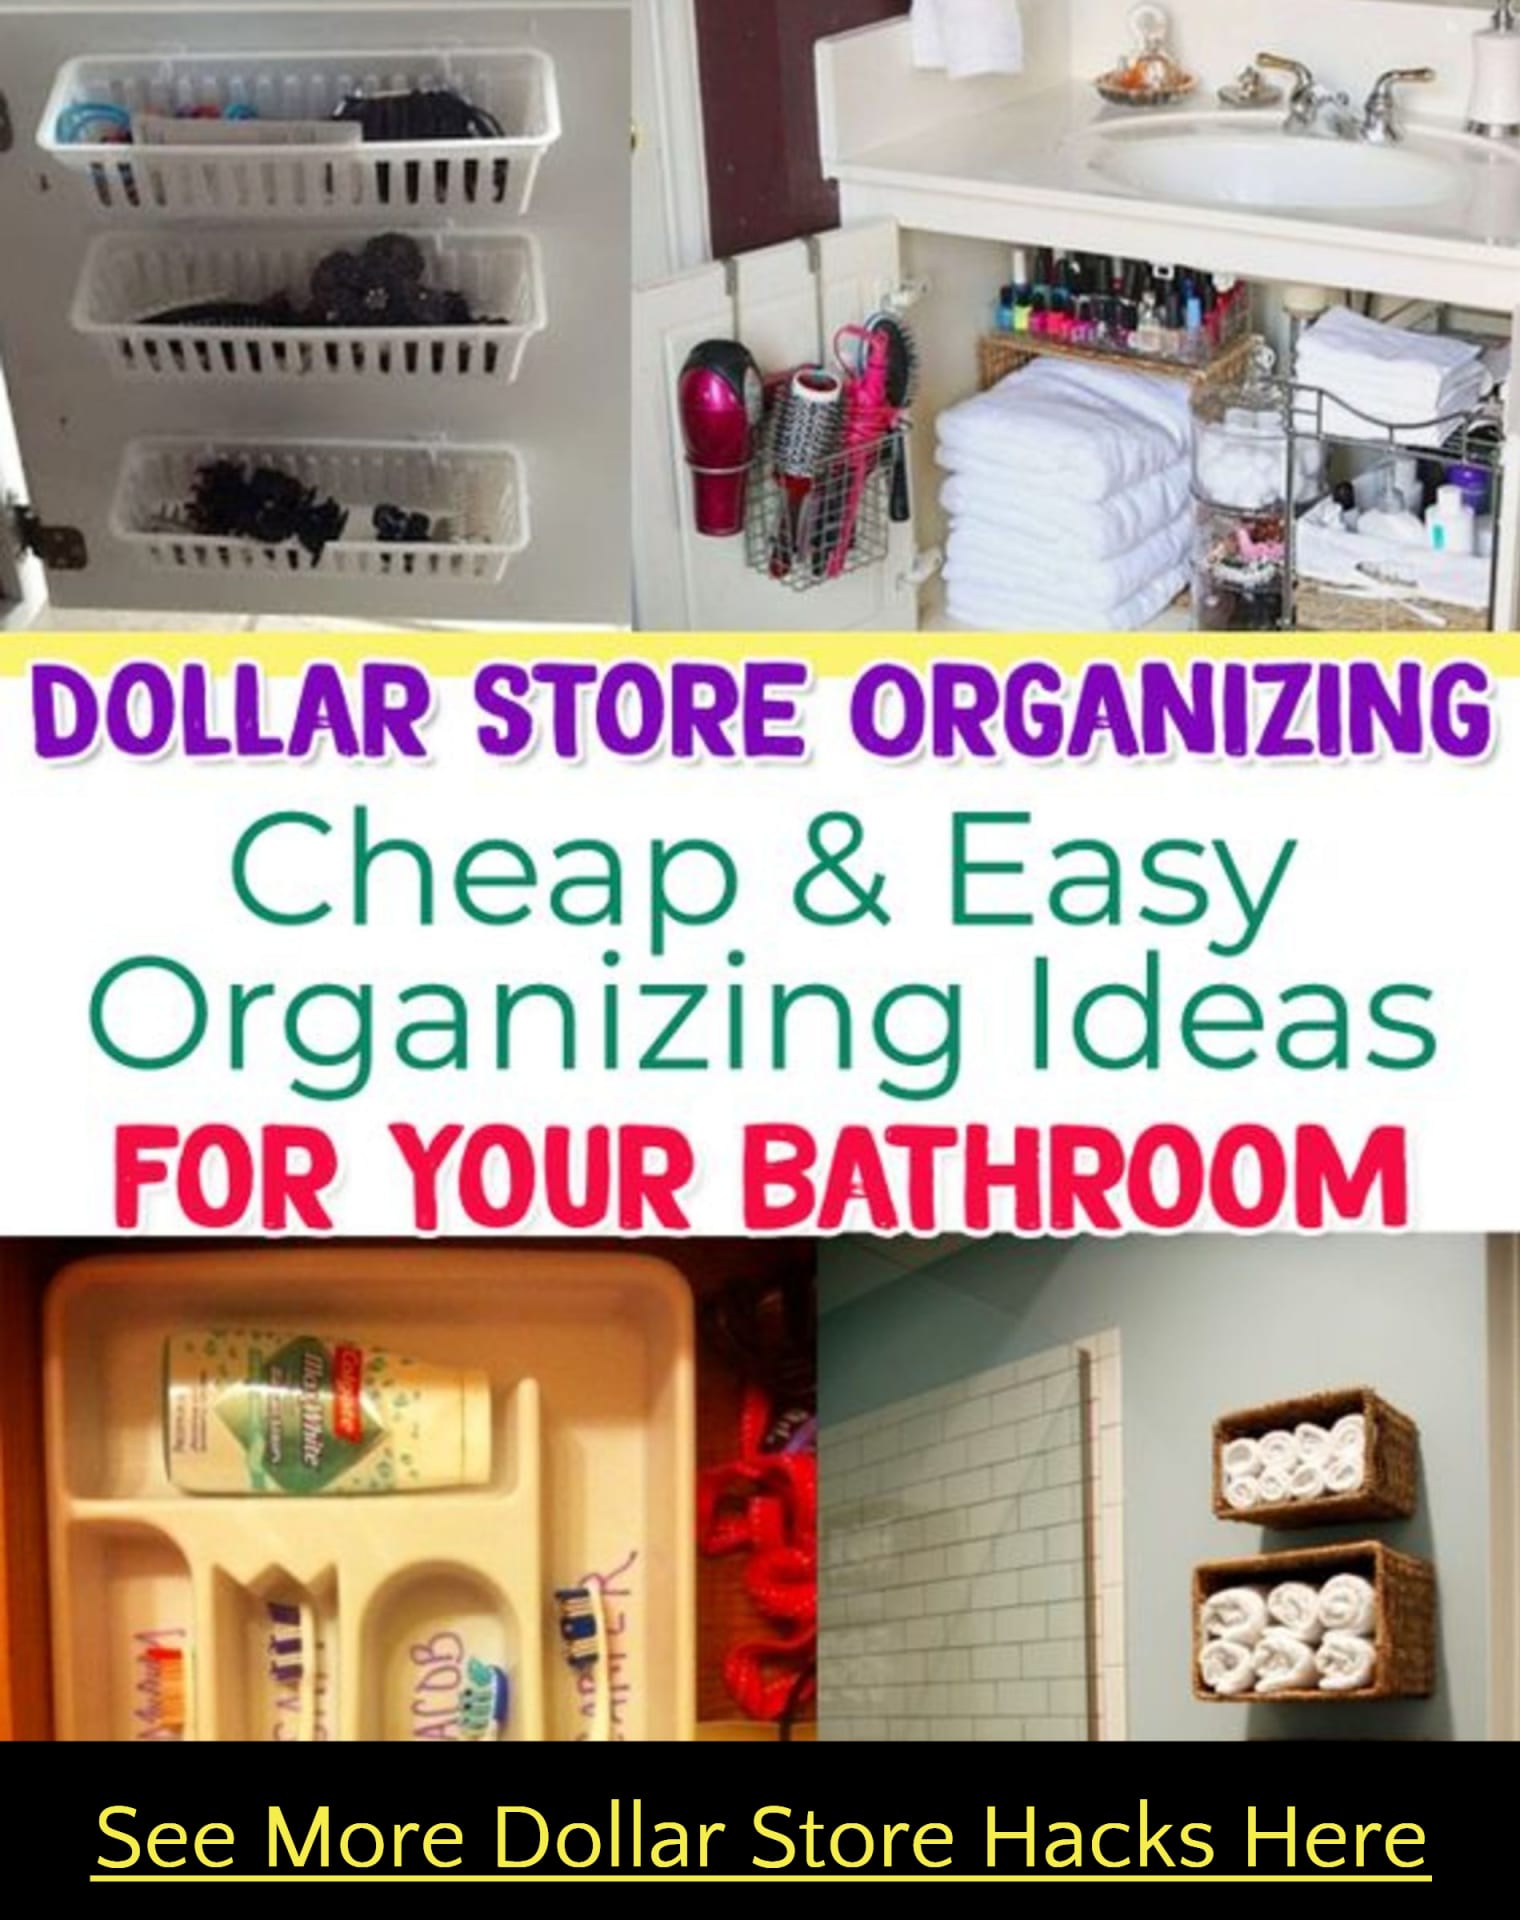 Dollar Store Organizing-Bathroom Organization on a Budget